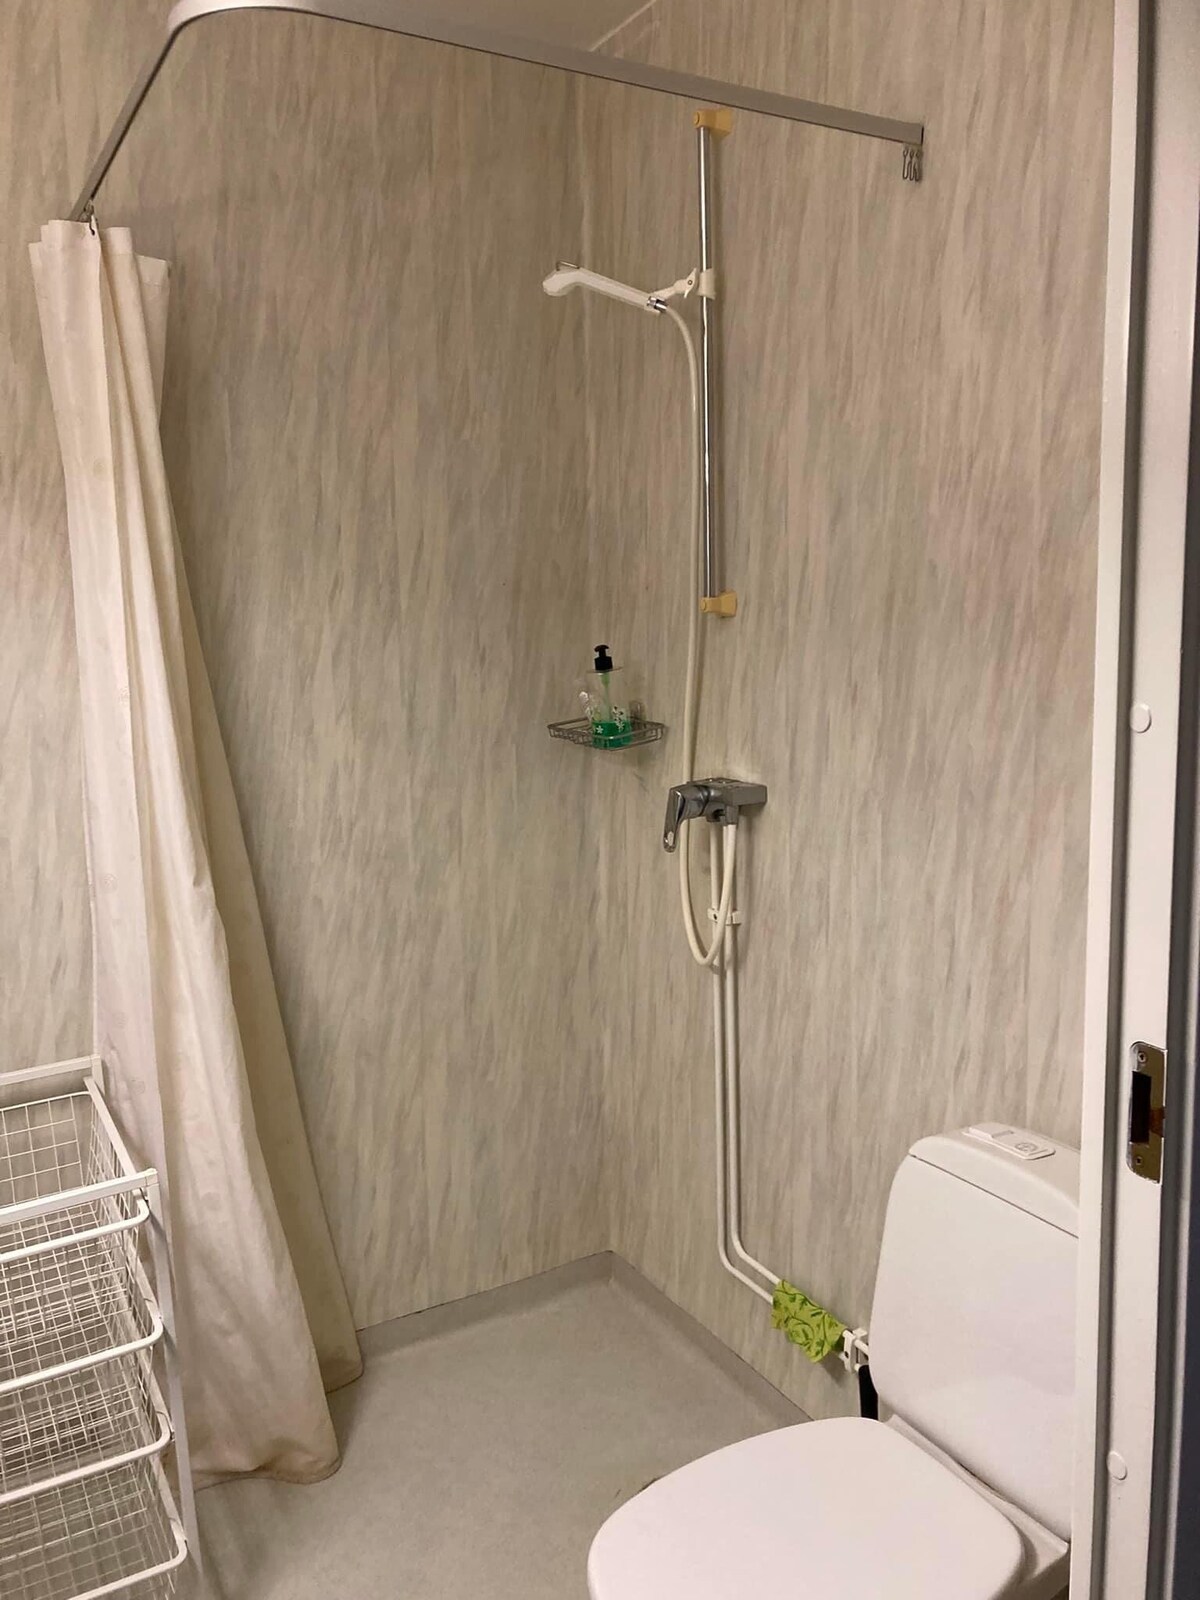 Trevligt rum med egen dusch/toa